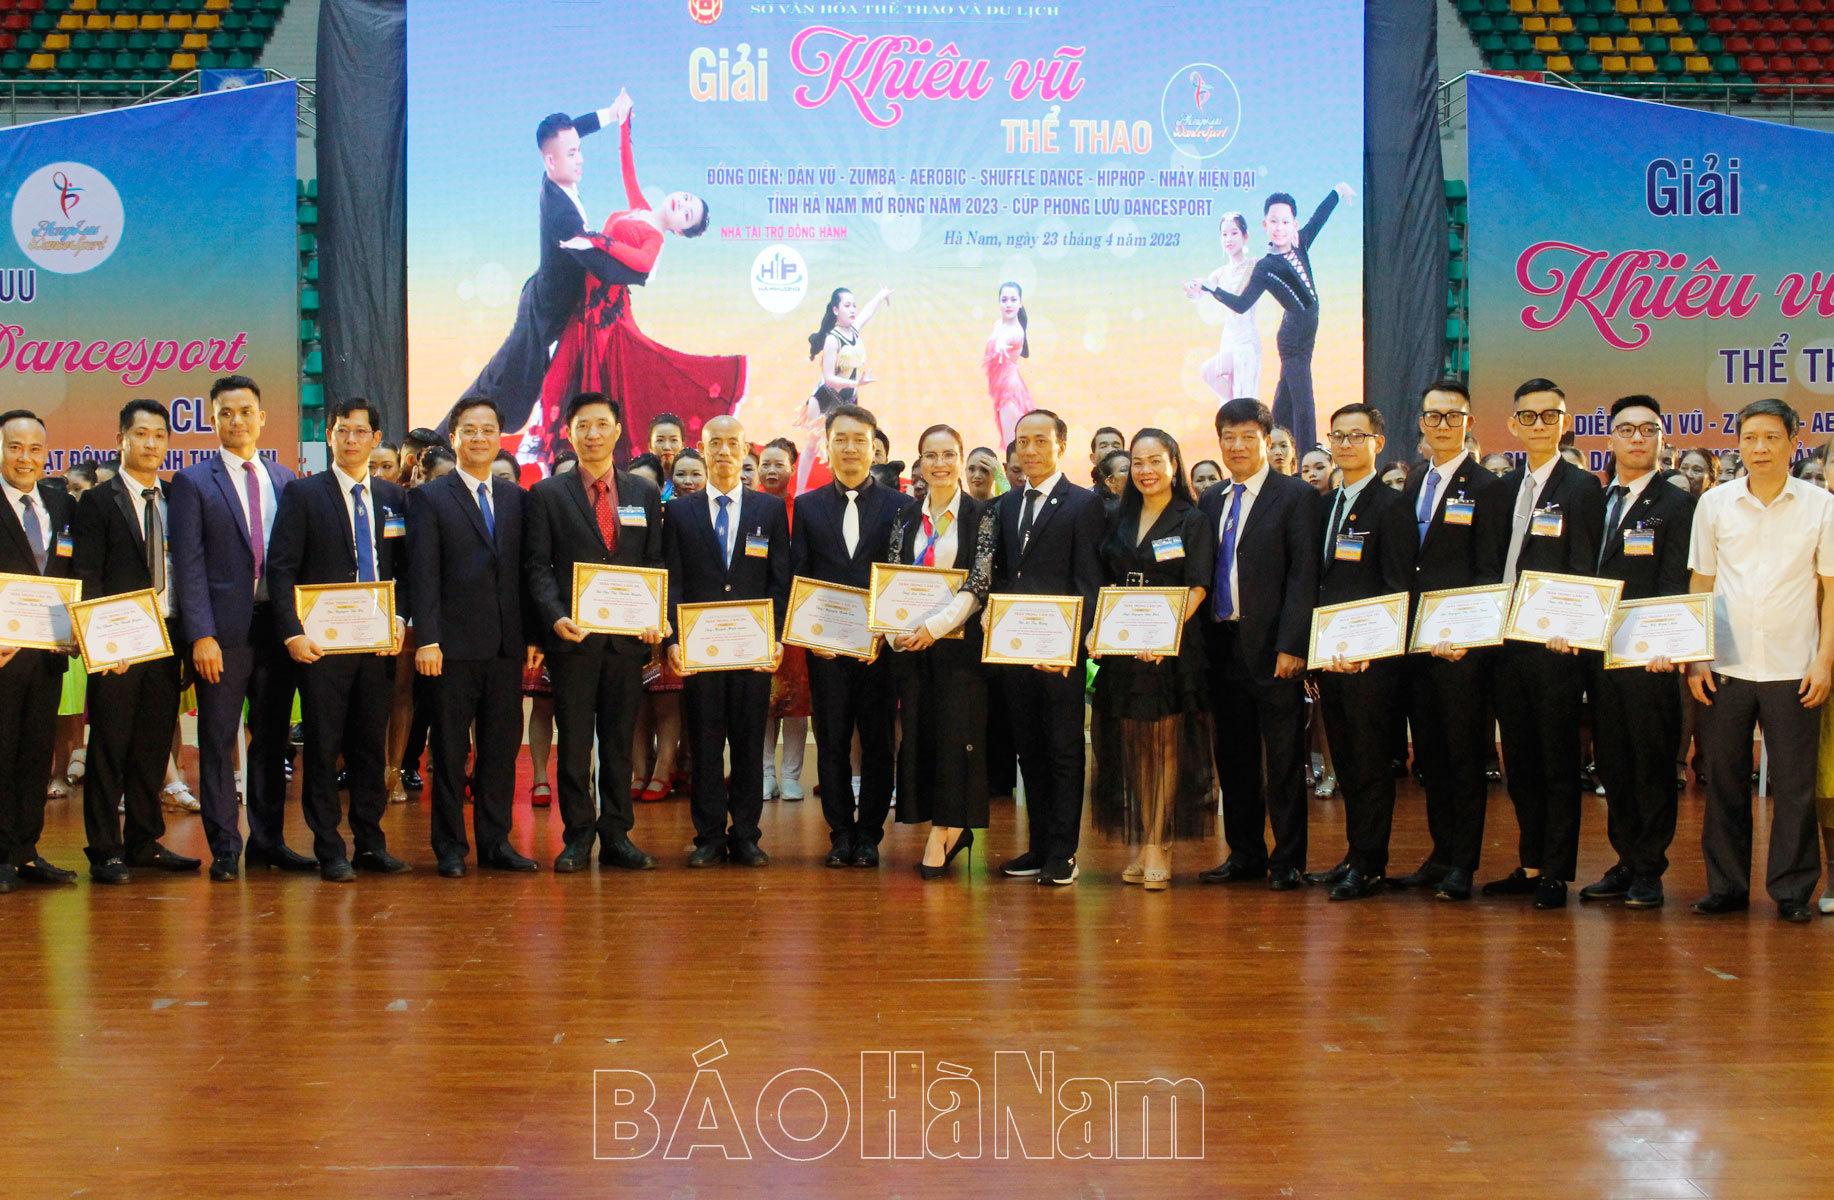 Gần 1200 VĐV tham gia Giải khiêu vũ tỉnh Hà Nam mở rộng năm 2023